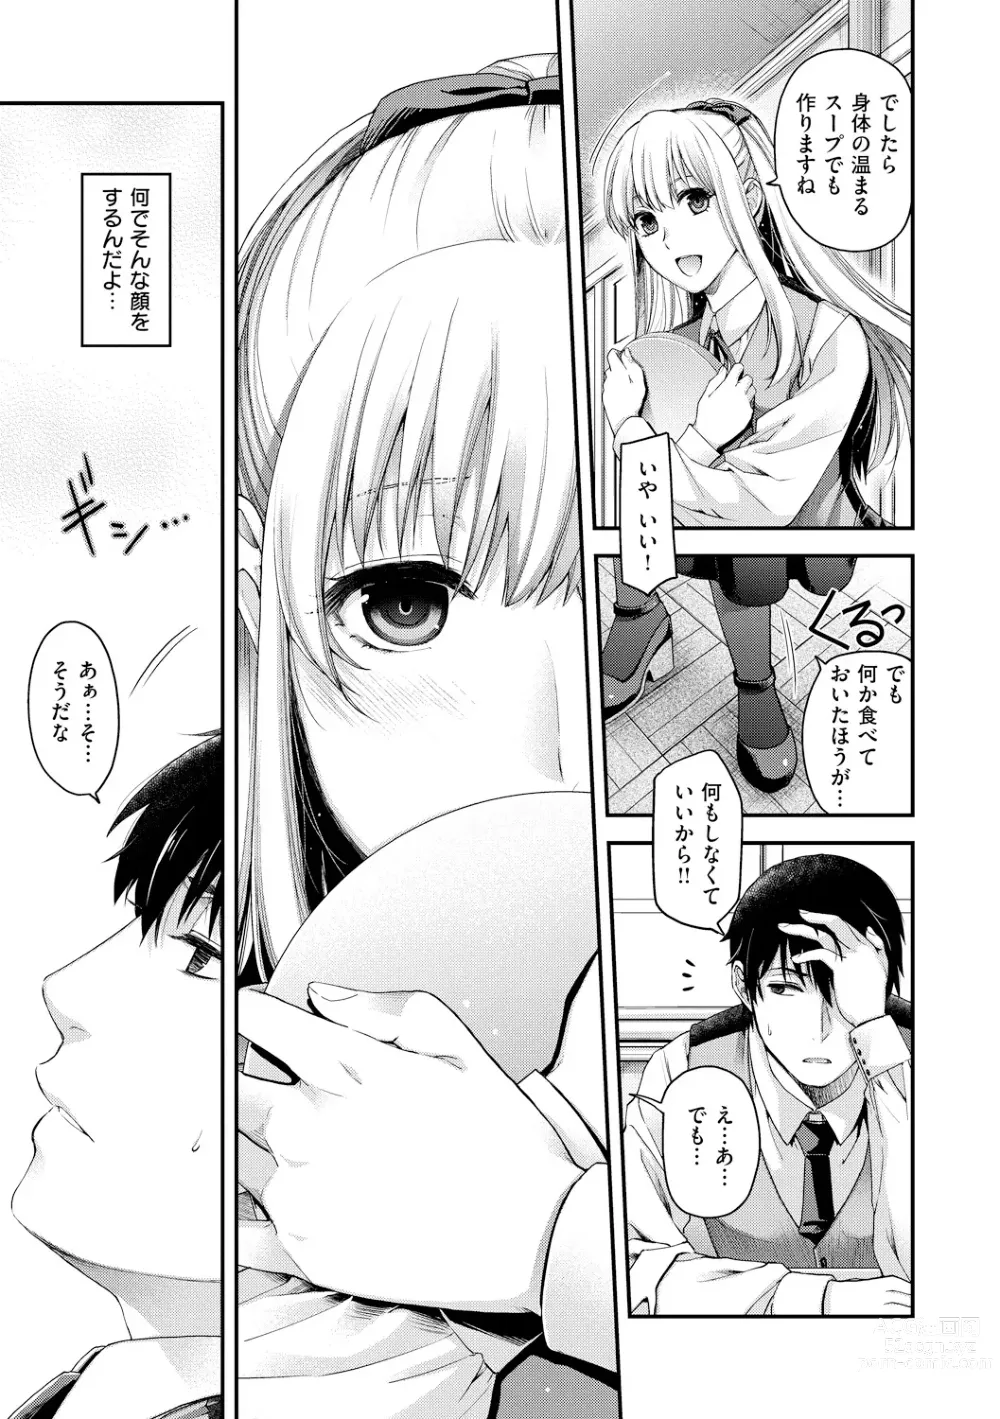 Page 13 of manga Chigiri to Musubi no Houteishiki